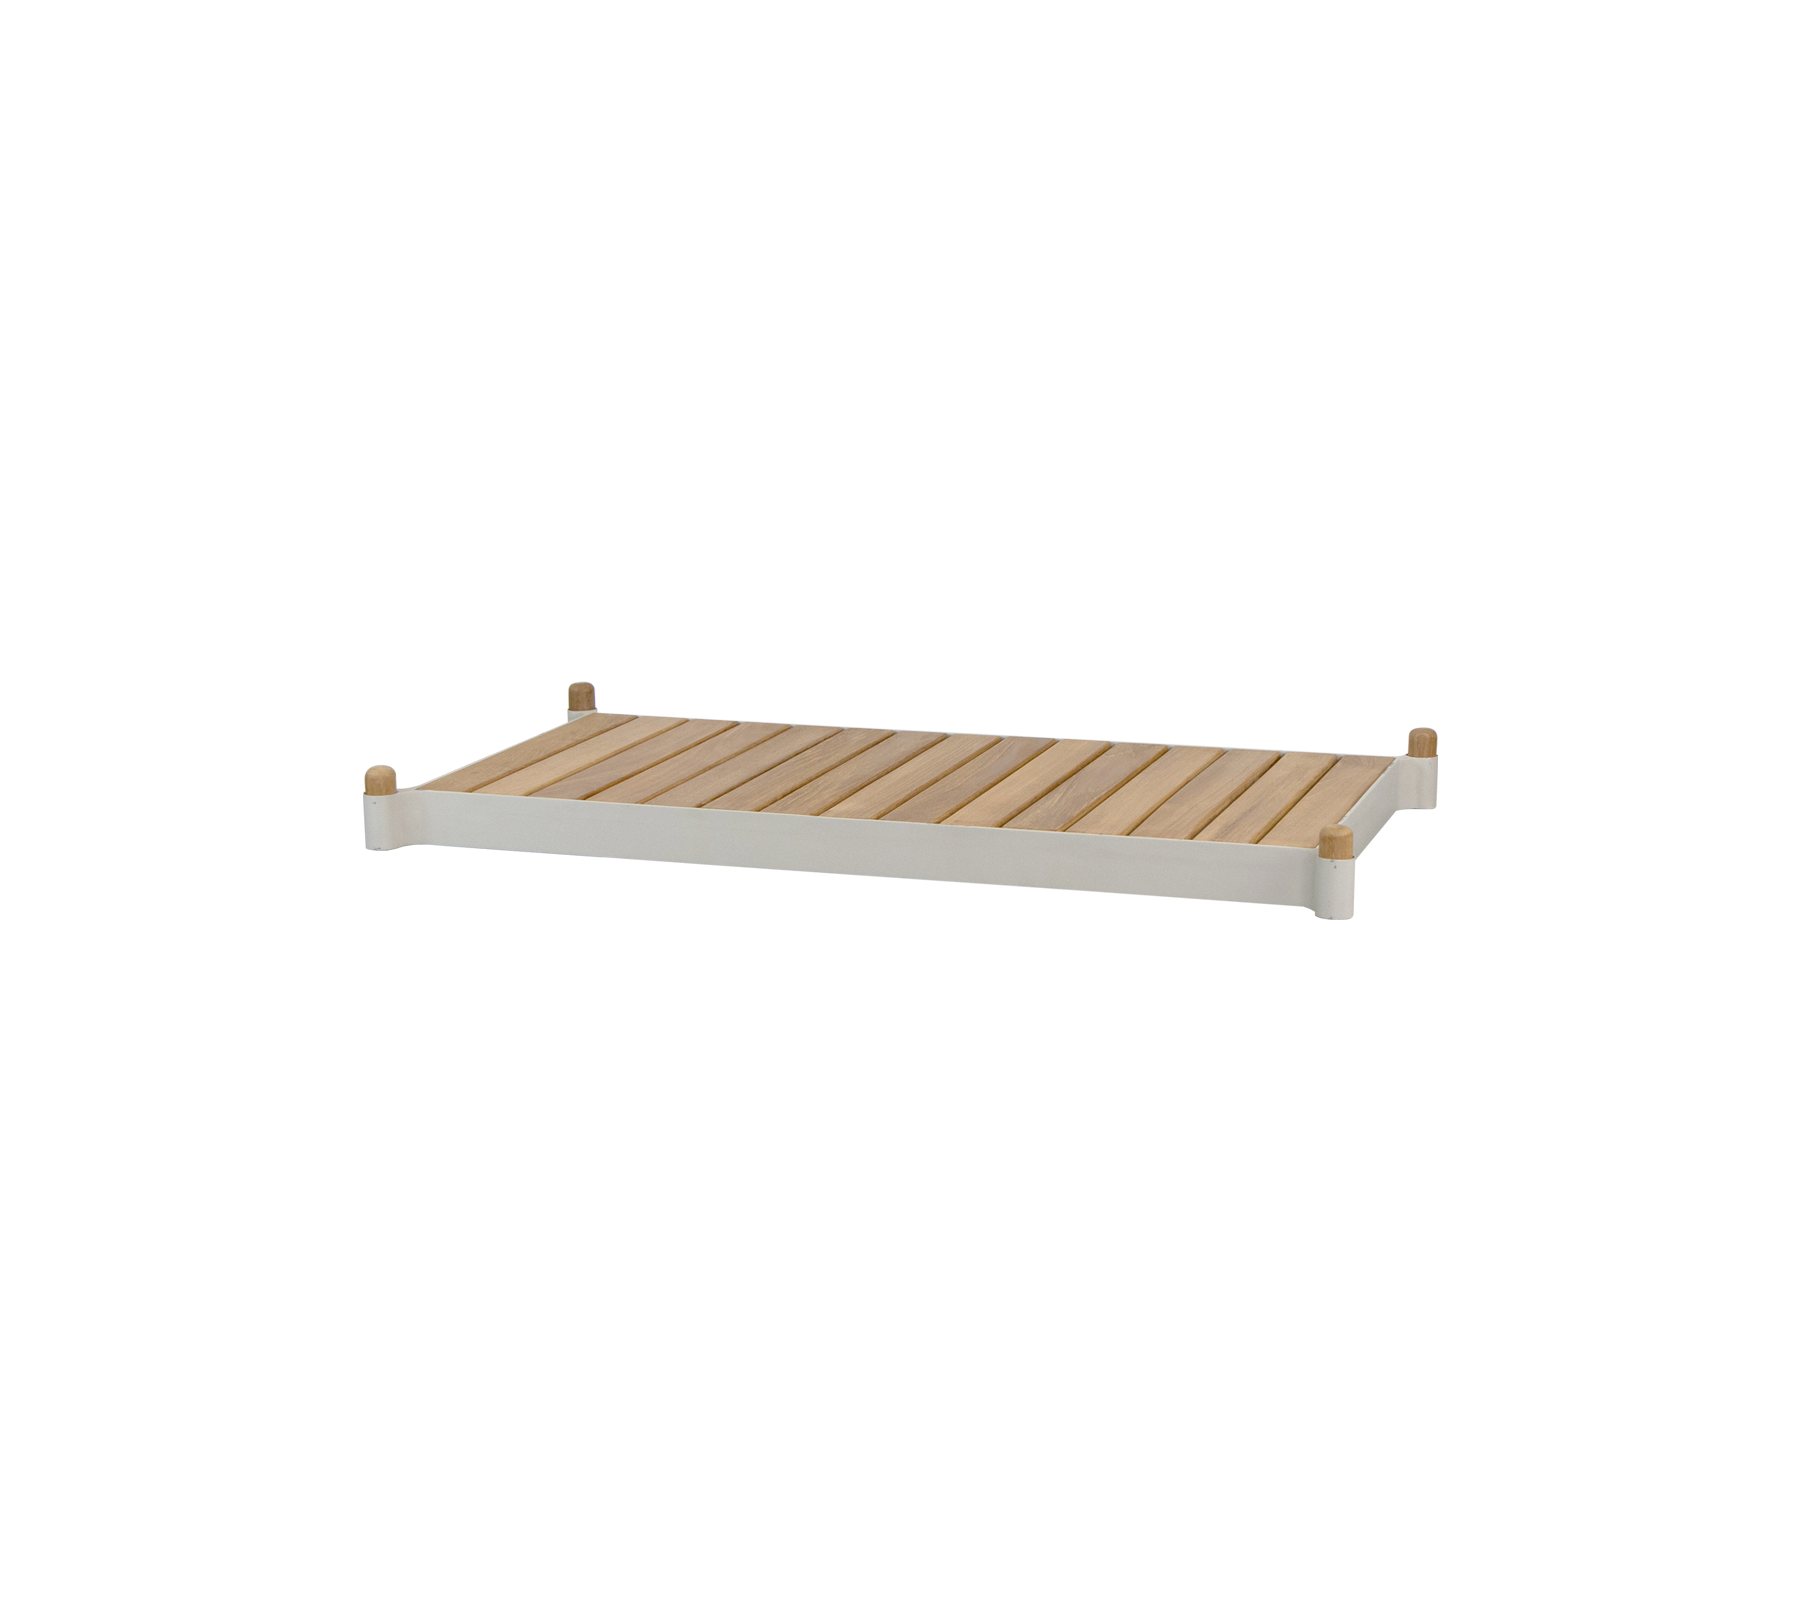 Cane-line - Sticks planter bench